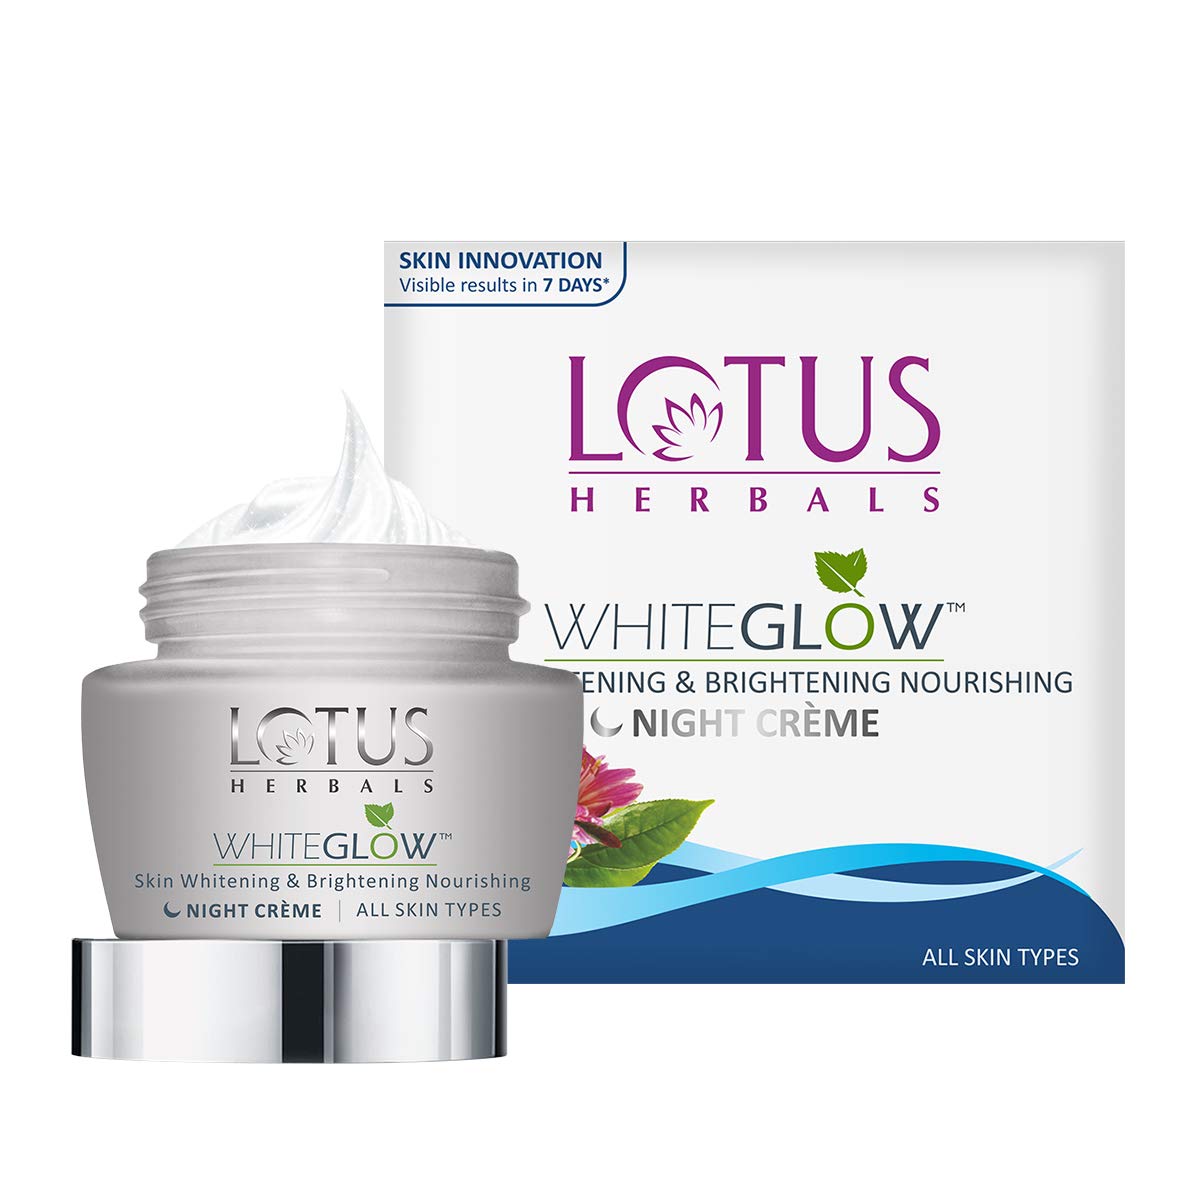 Lotus Herbals WHITEGLOW Skin Whitening & Brightening Nourishing Night Creme (60gm)